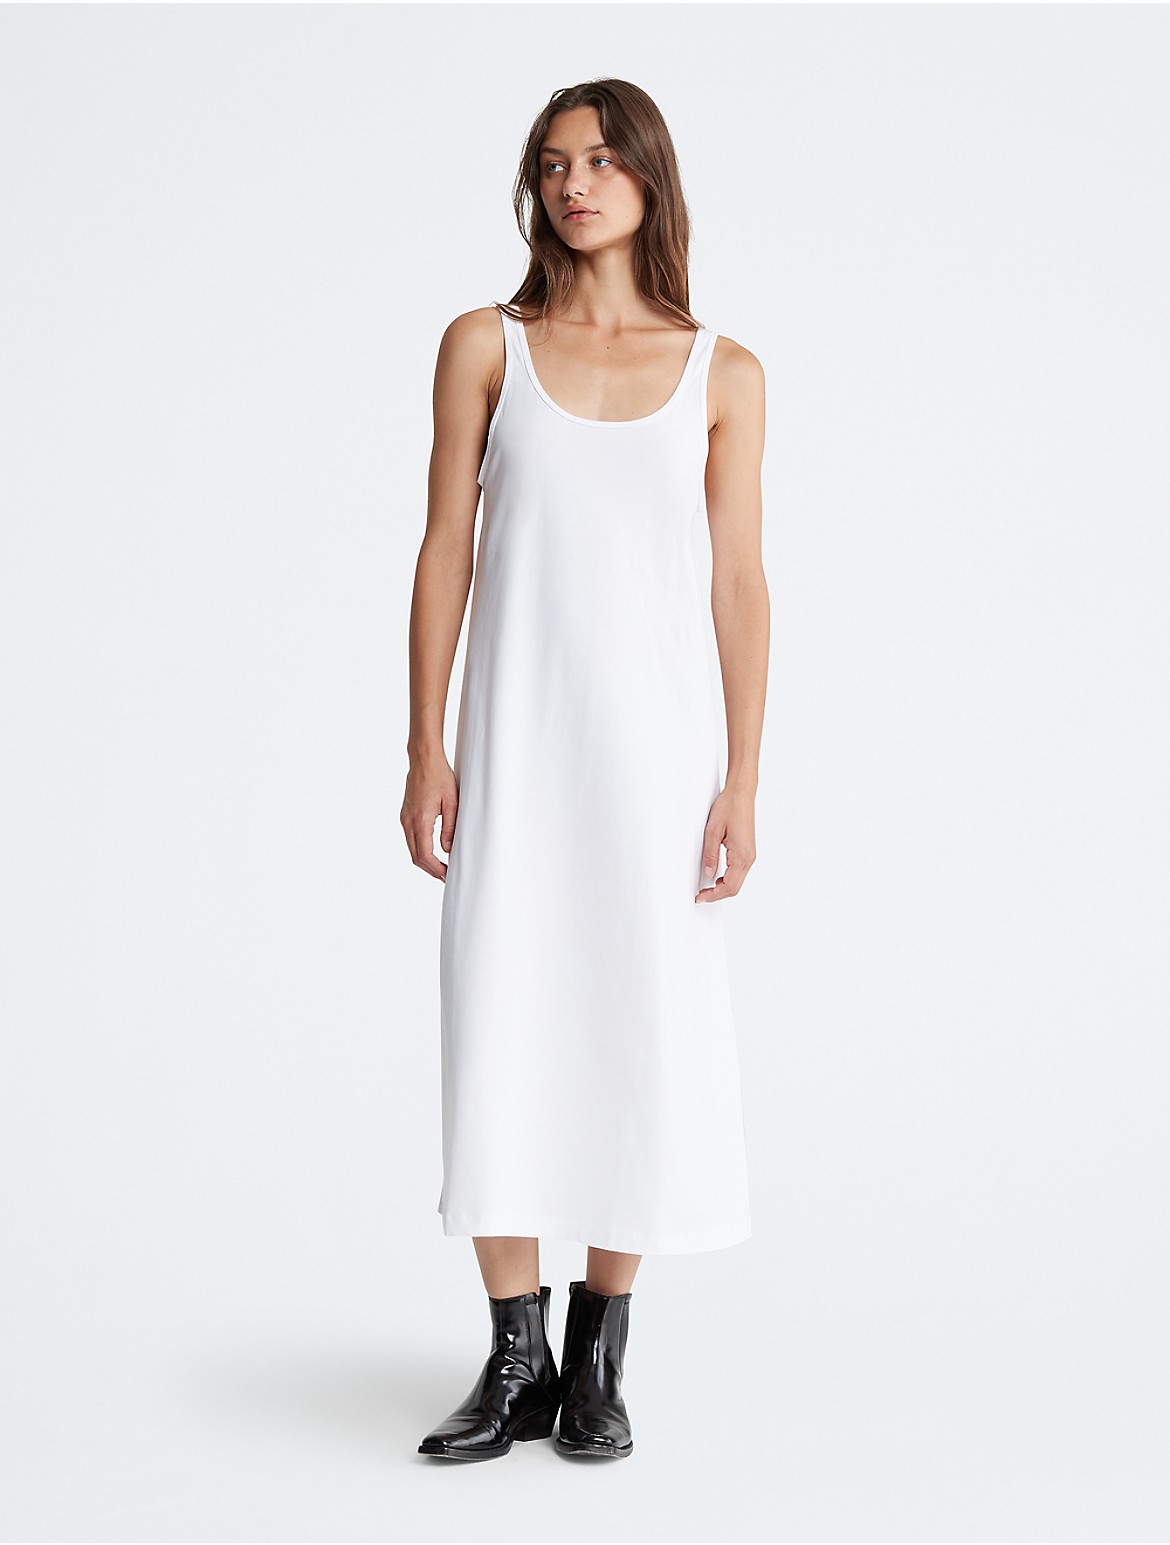 Calvin Klein Women's Modern Stretch Tank Dress - White - XS